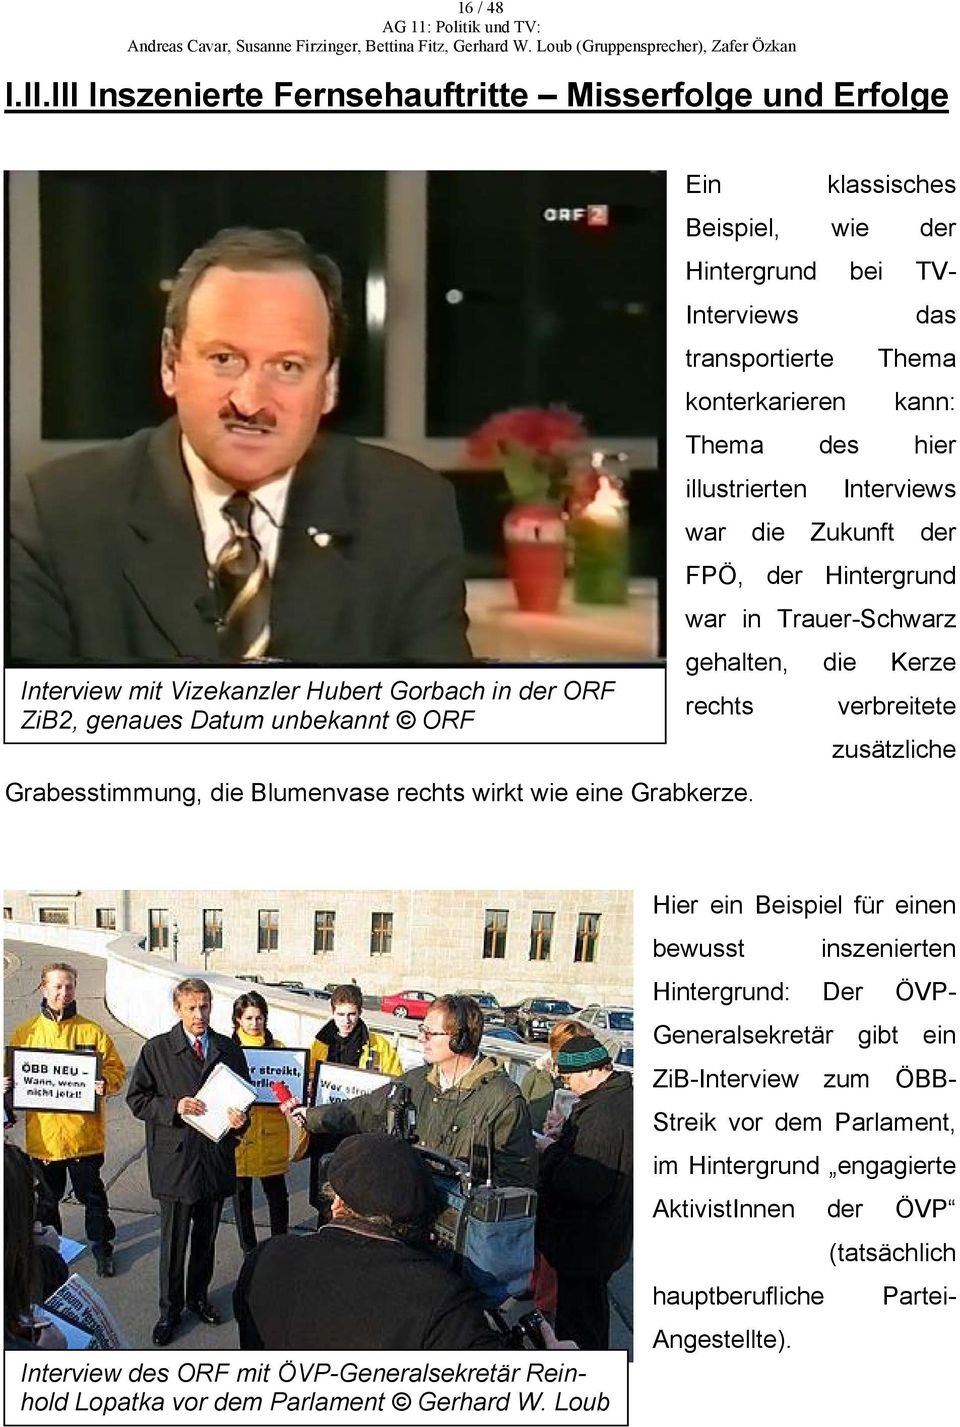 Interviews war die Zukunft der FPÖ, der Hintergrund war in Trauer-Schwarz gehalten, die Kerze Interview mit Vizekanzler Hubert Gorbach in der ORF ZiB2, genaues Datum unbekannt ORF rechts verbreitete